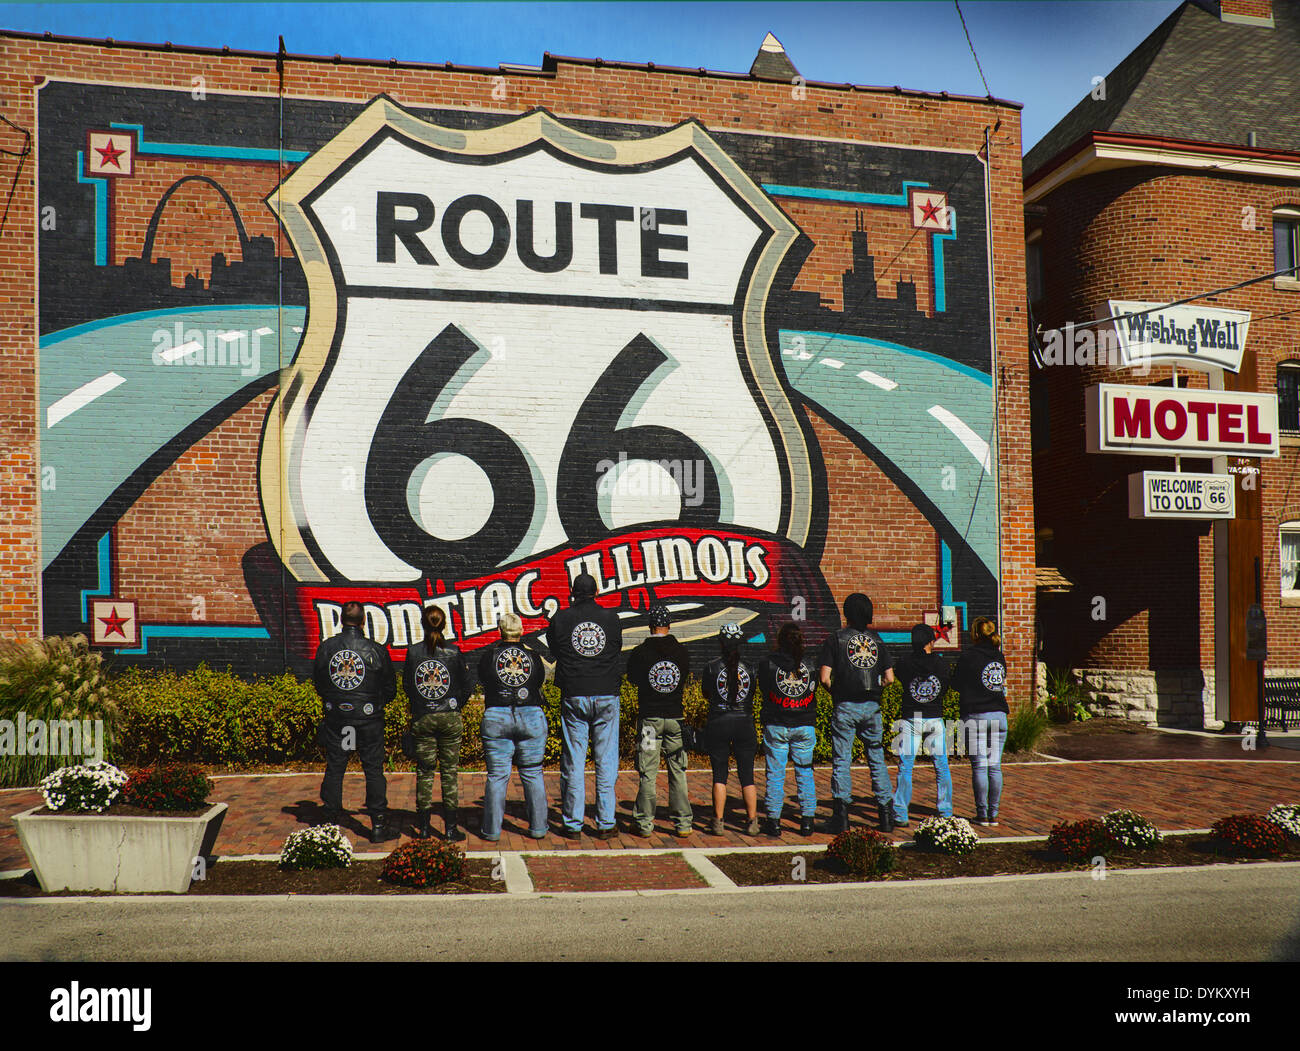 Les Coyotes Malaga club de moto l'itinéraire est affiché 66 murale dans Pontiac, Illinois, une ville le long de la Route 66 Banque D'Images